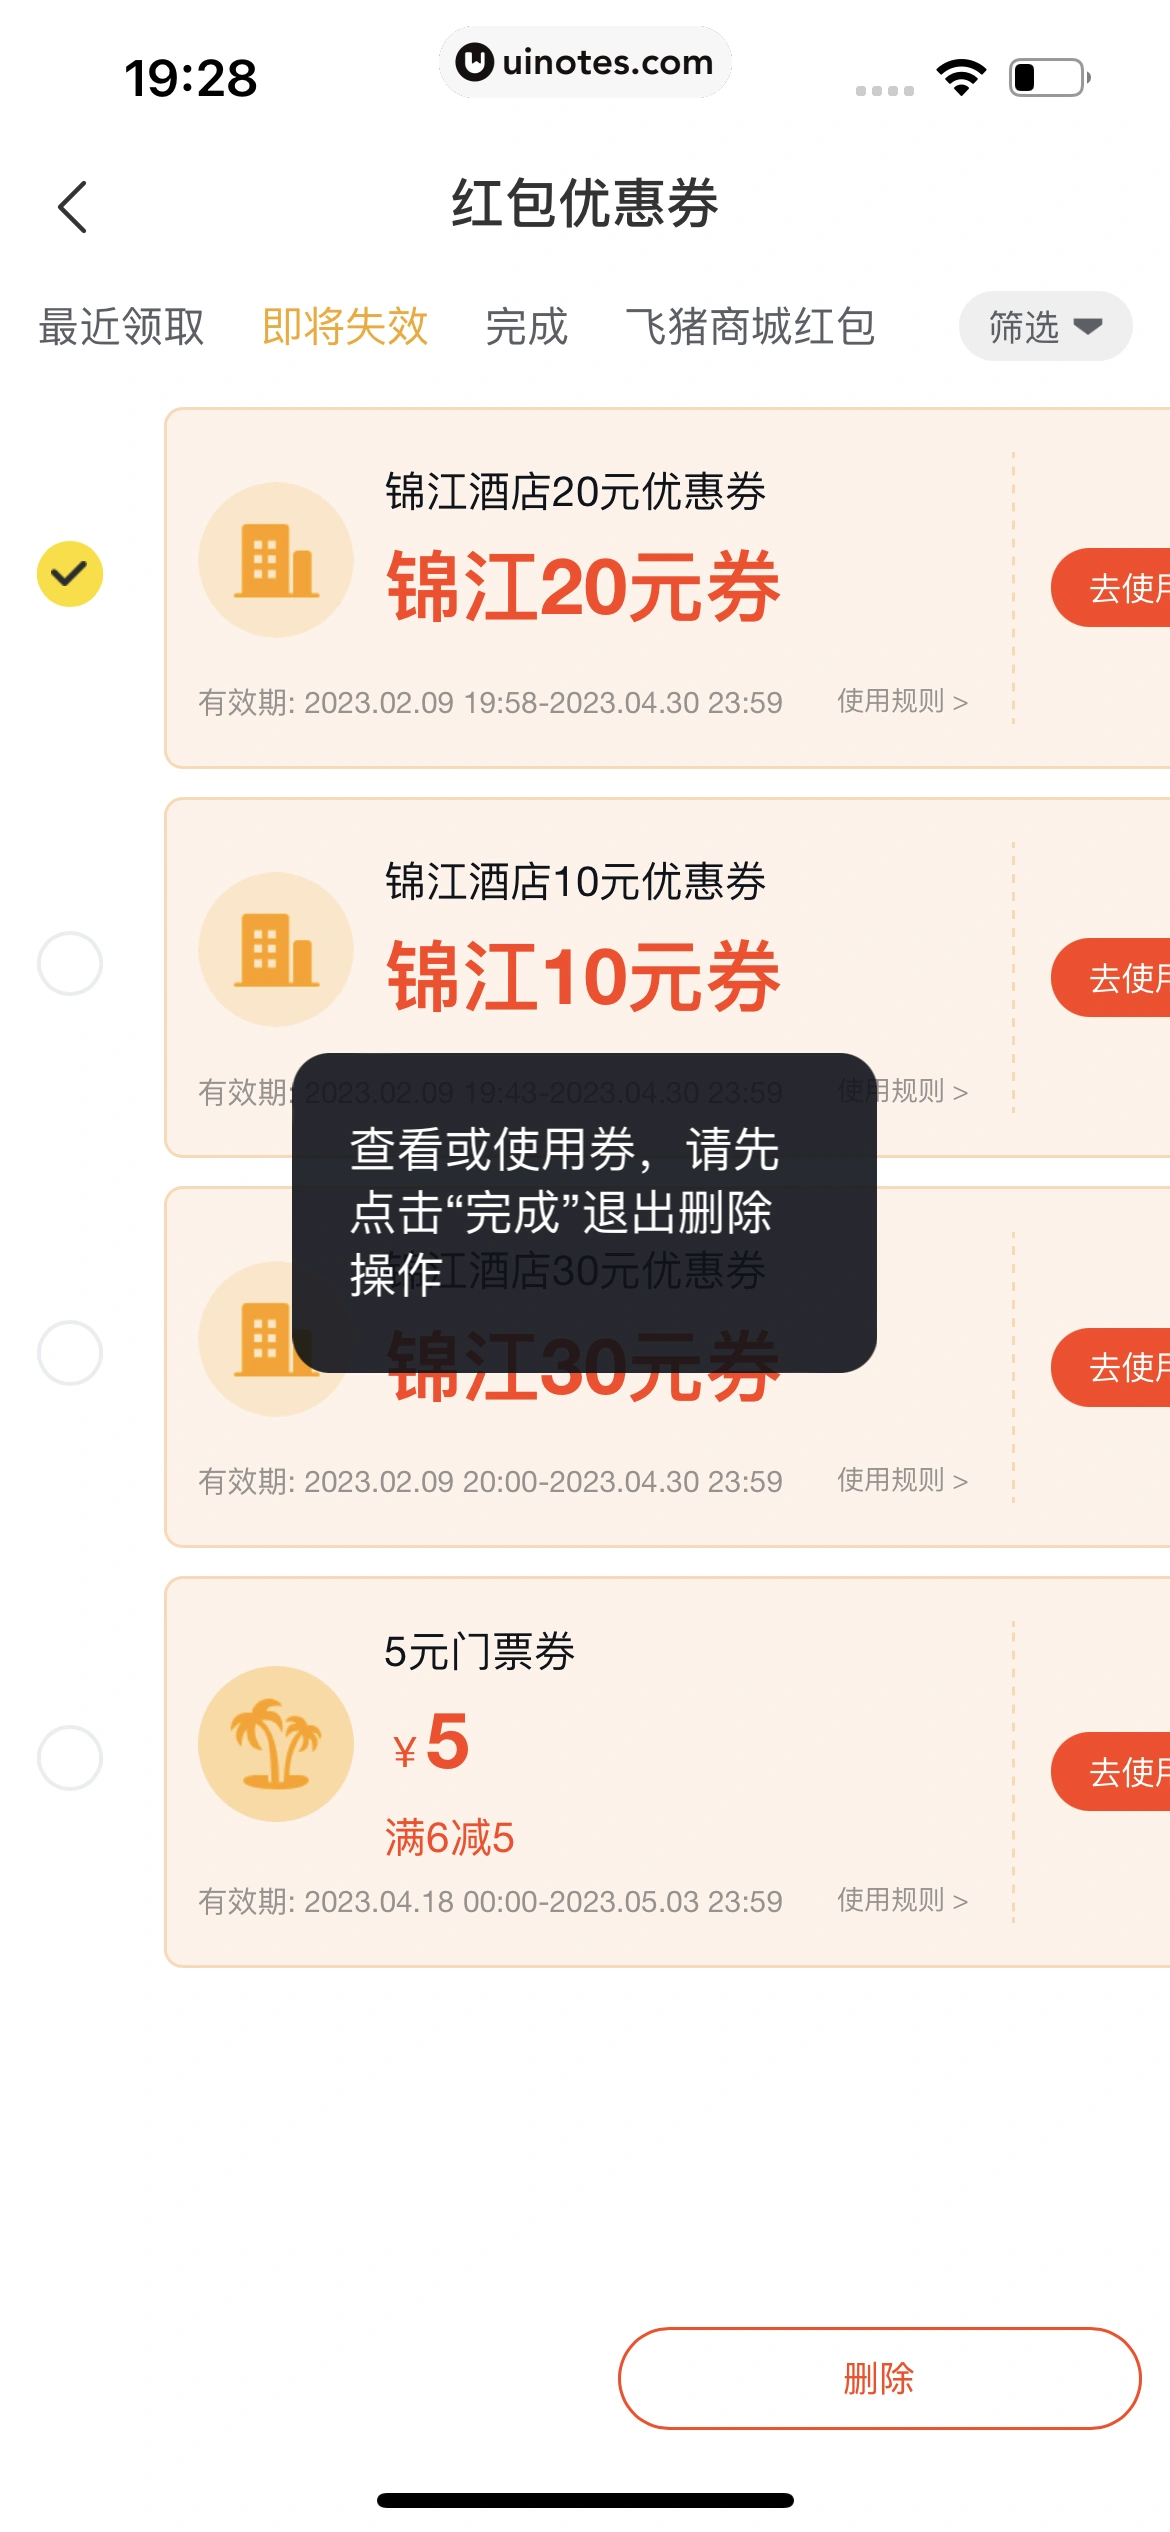 飞猪旅行 App 截图 097 - UI Notes